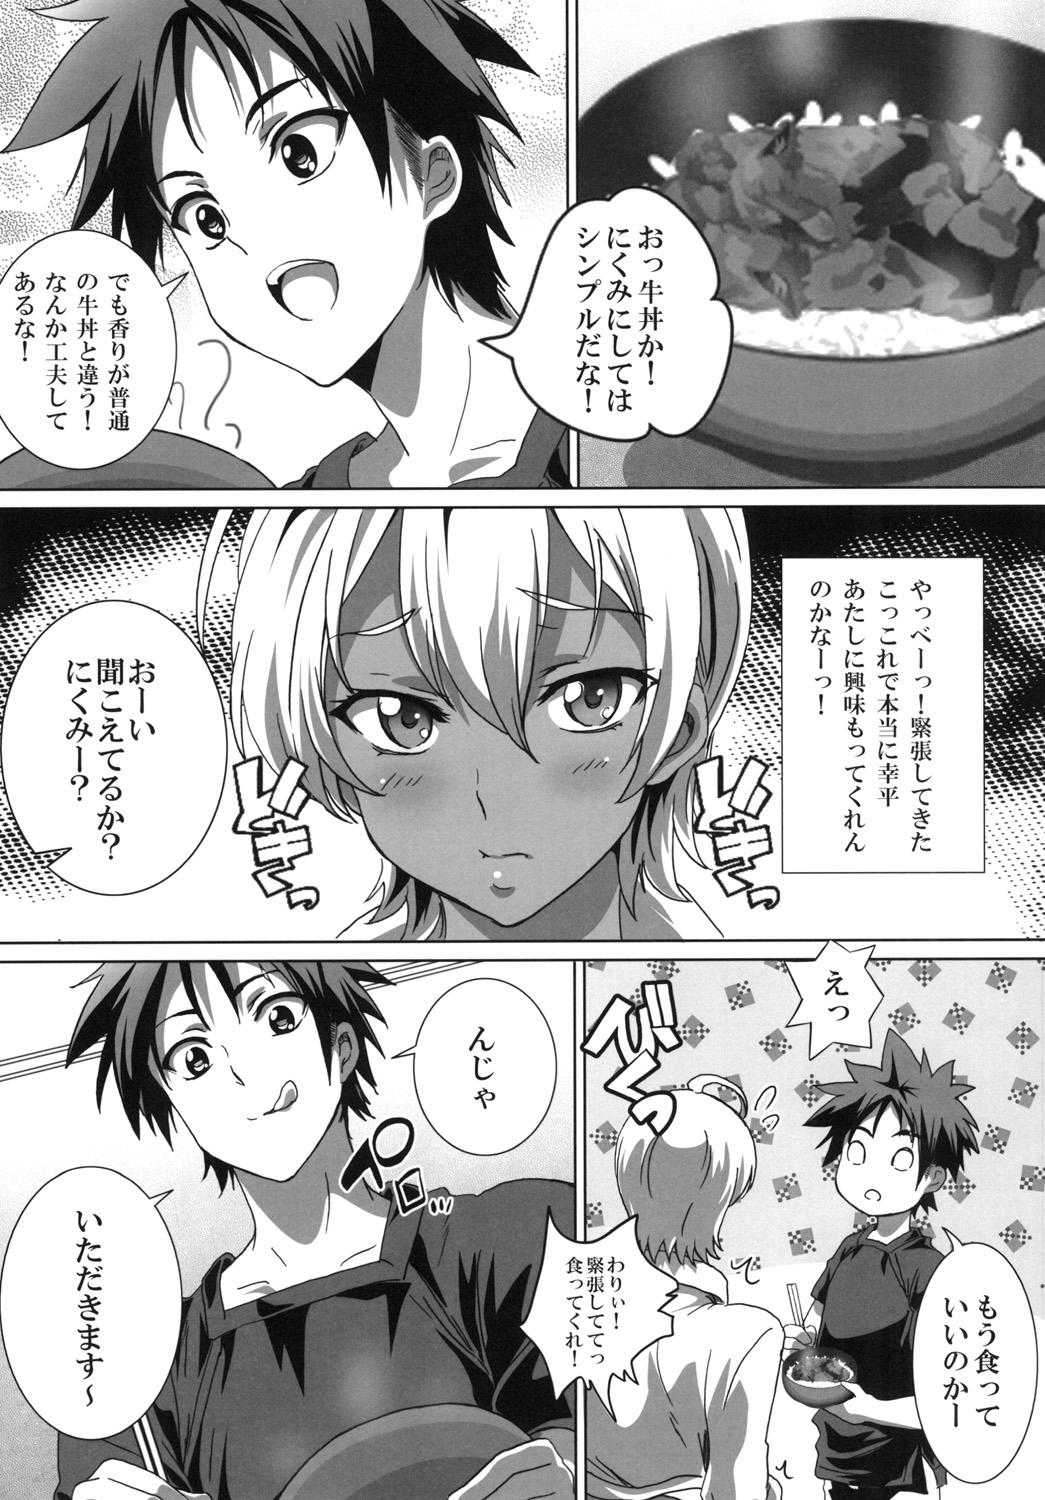 Ladyboy Meshimase! Nikumi-chan! - Shokugeki no soma Perfect Body - Page 9